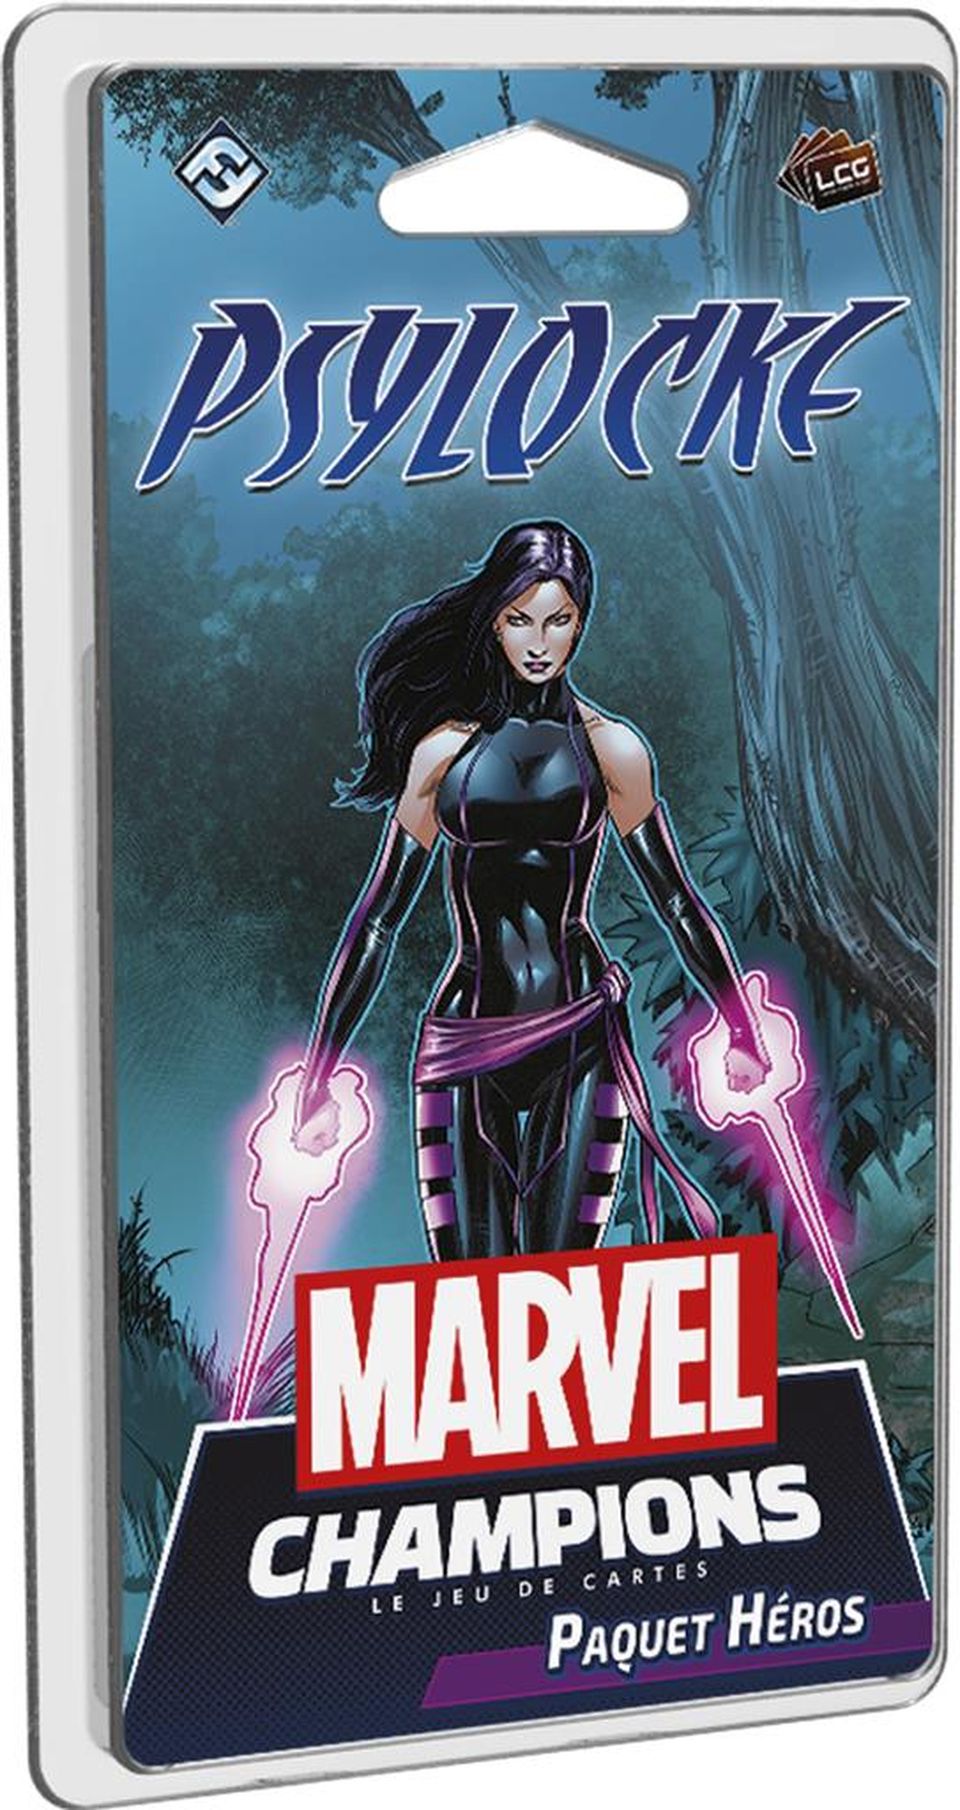 Marvel Champions : Le jeu de cartes - Psylocke (Paquet Héros) image